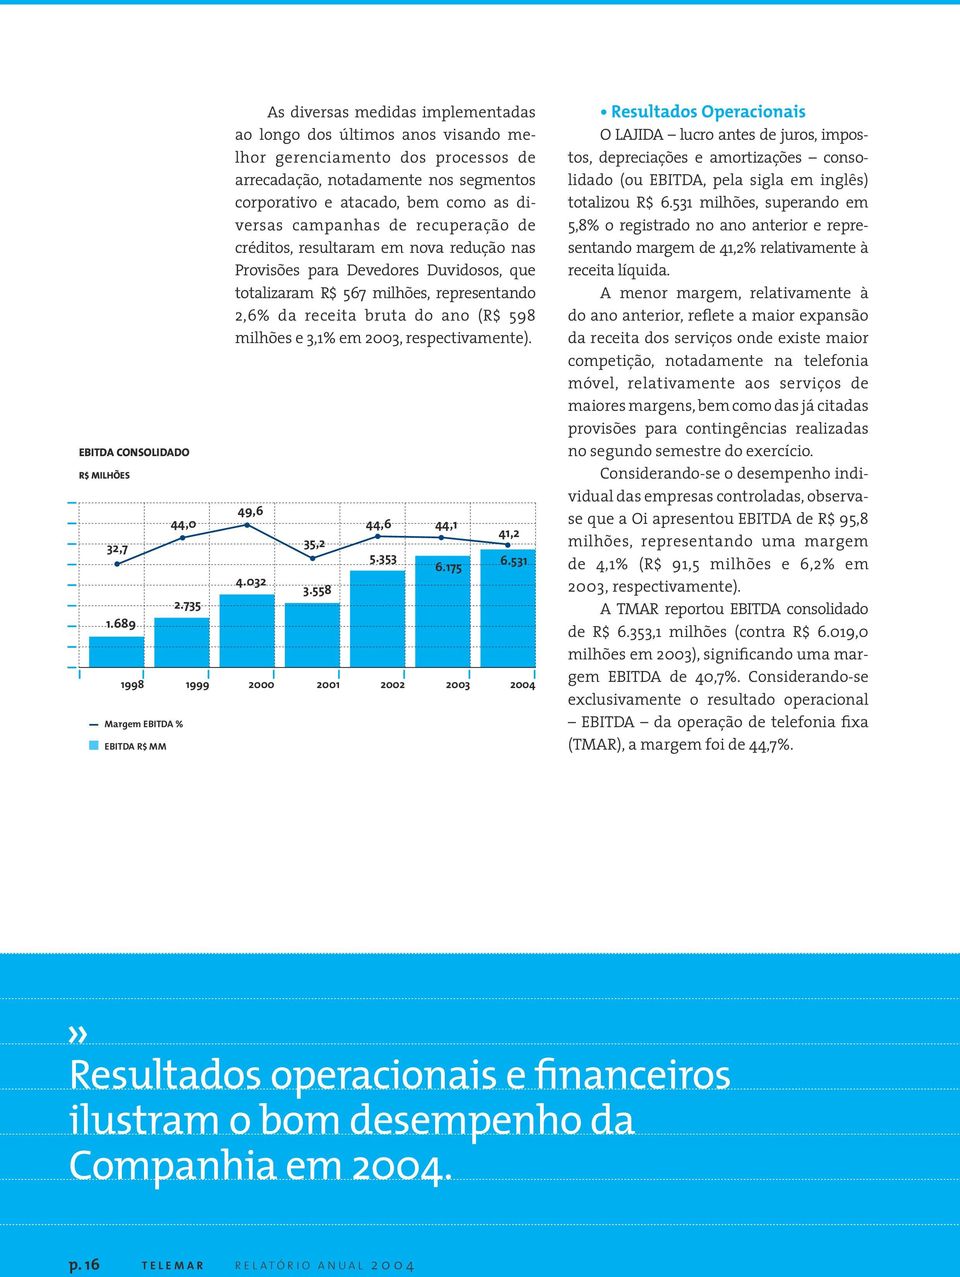 campanhas de recuperação de créditos, resultaram em nova redução nas Provisões para Devedores Duvidosos, que totalizaram R$ 567 milhões, representando 2,6% da receita bruta do ano (R$ 598 milhões e